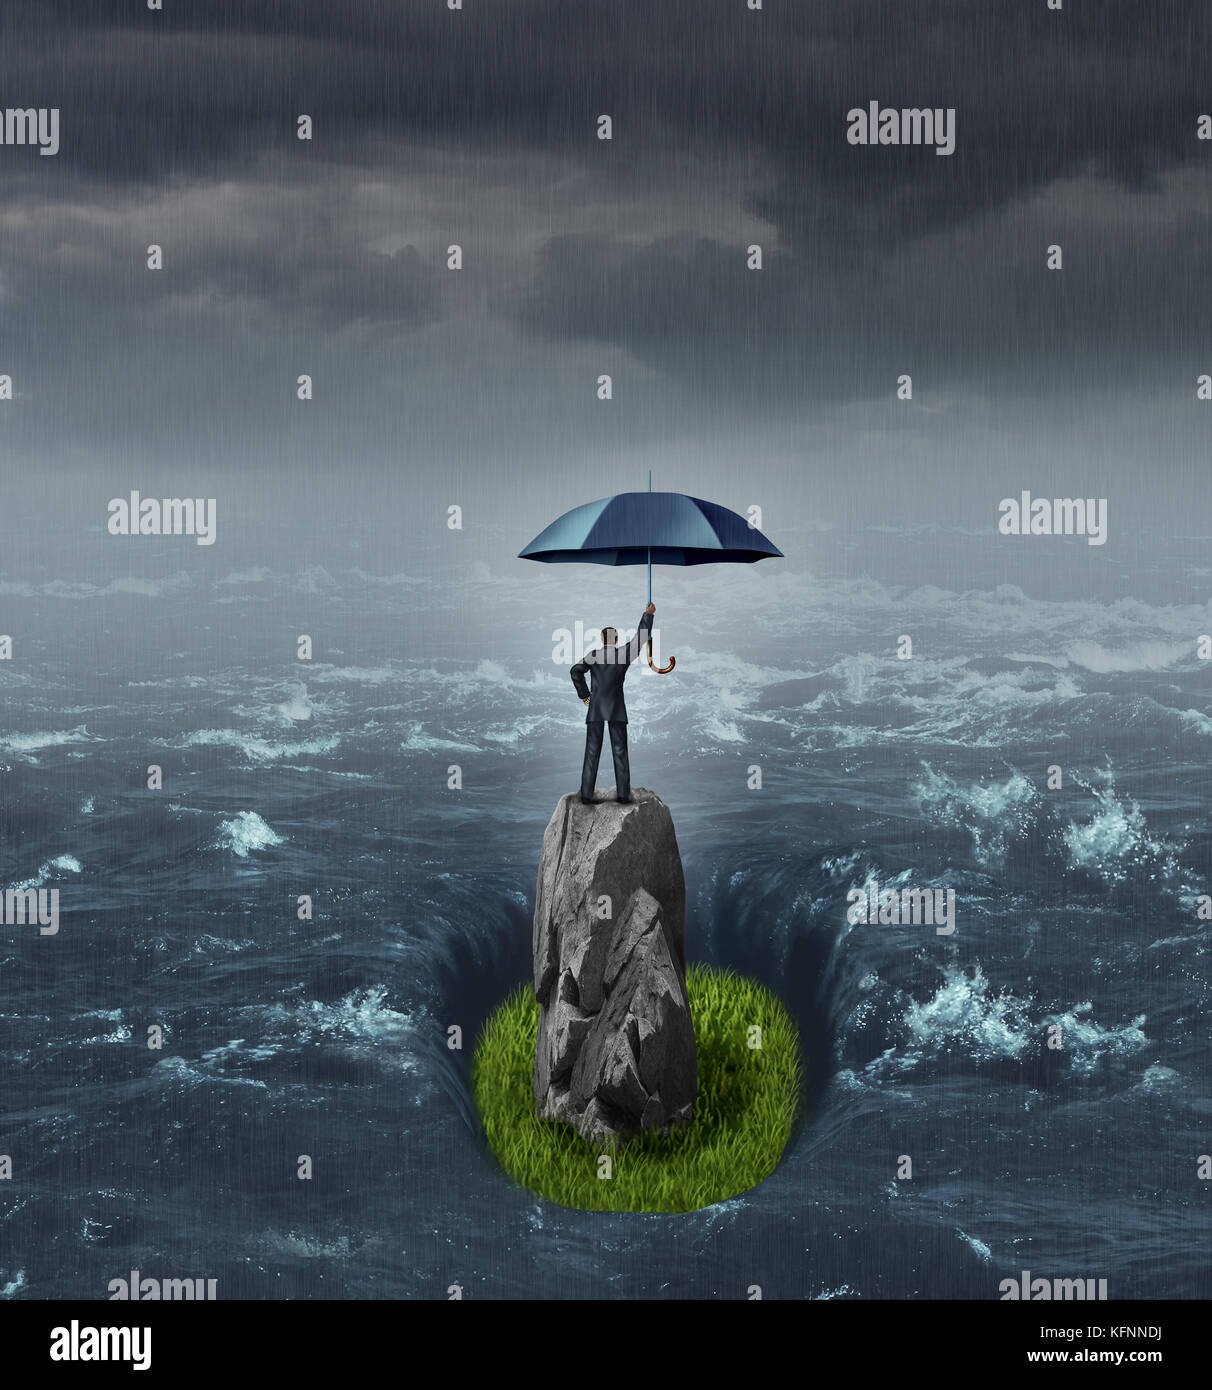 Geschäftsmann erfolg konzept Denken als eine Person, die ein Sonnenschirm in der Mitte einer Flut oder Ozean stehend auf einem trockenen Rock mit Gras. Stockfoto